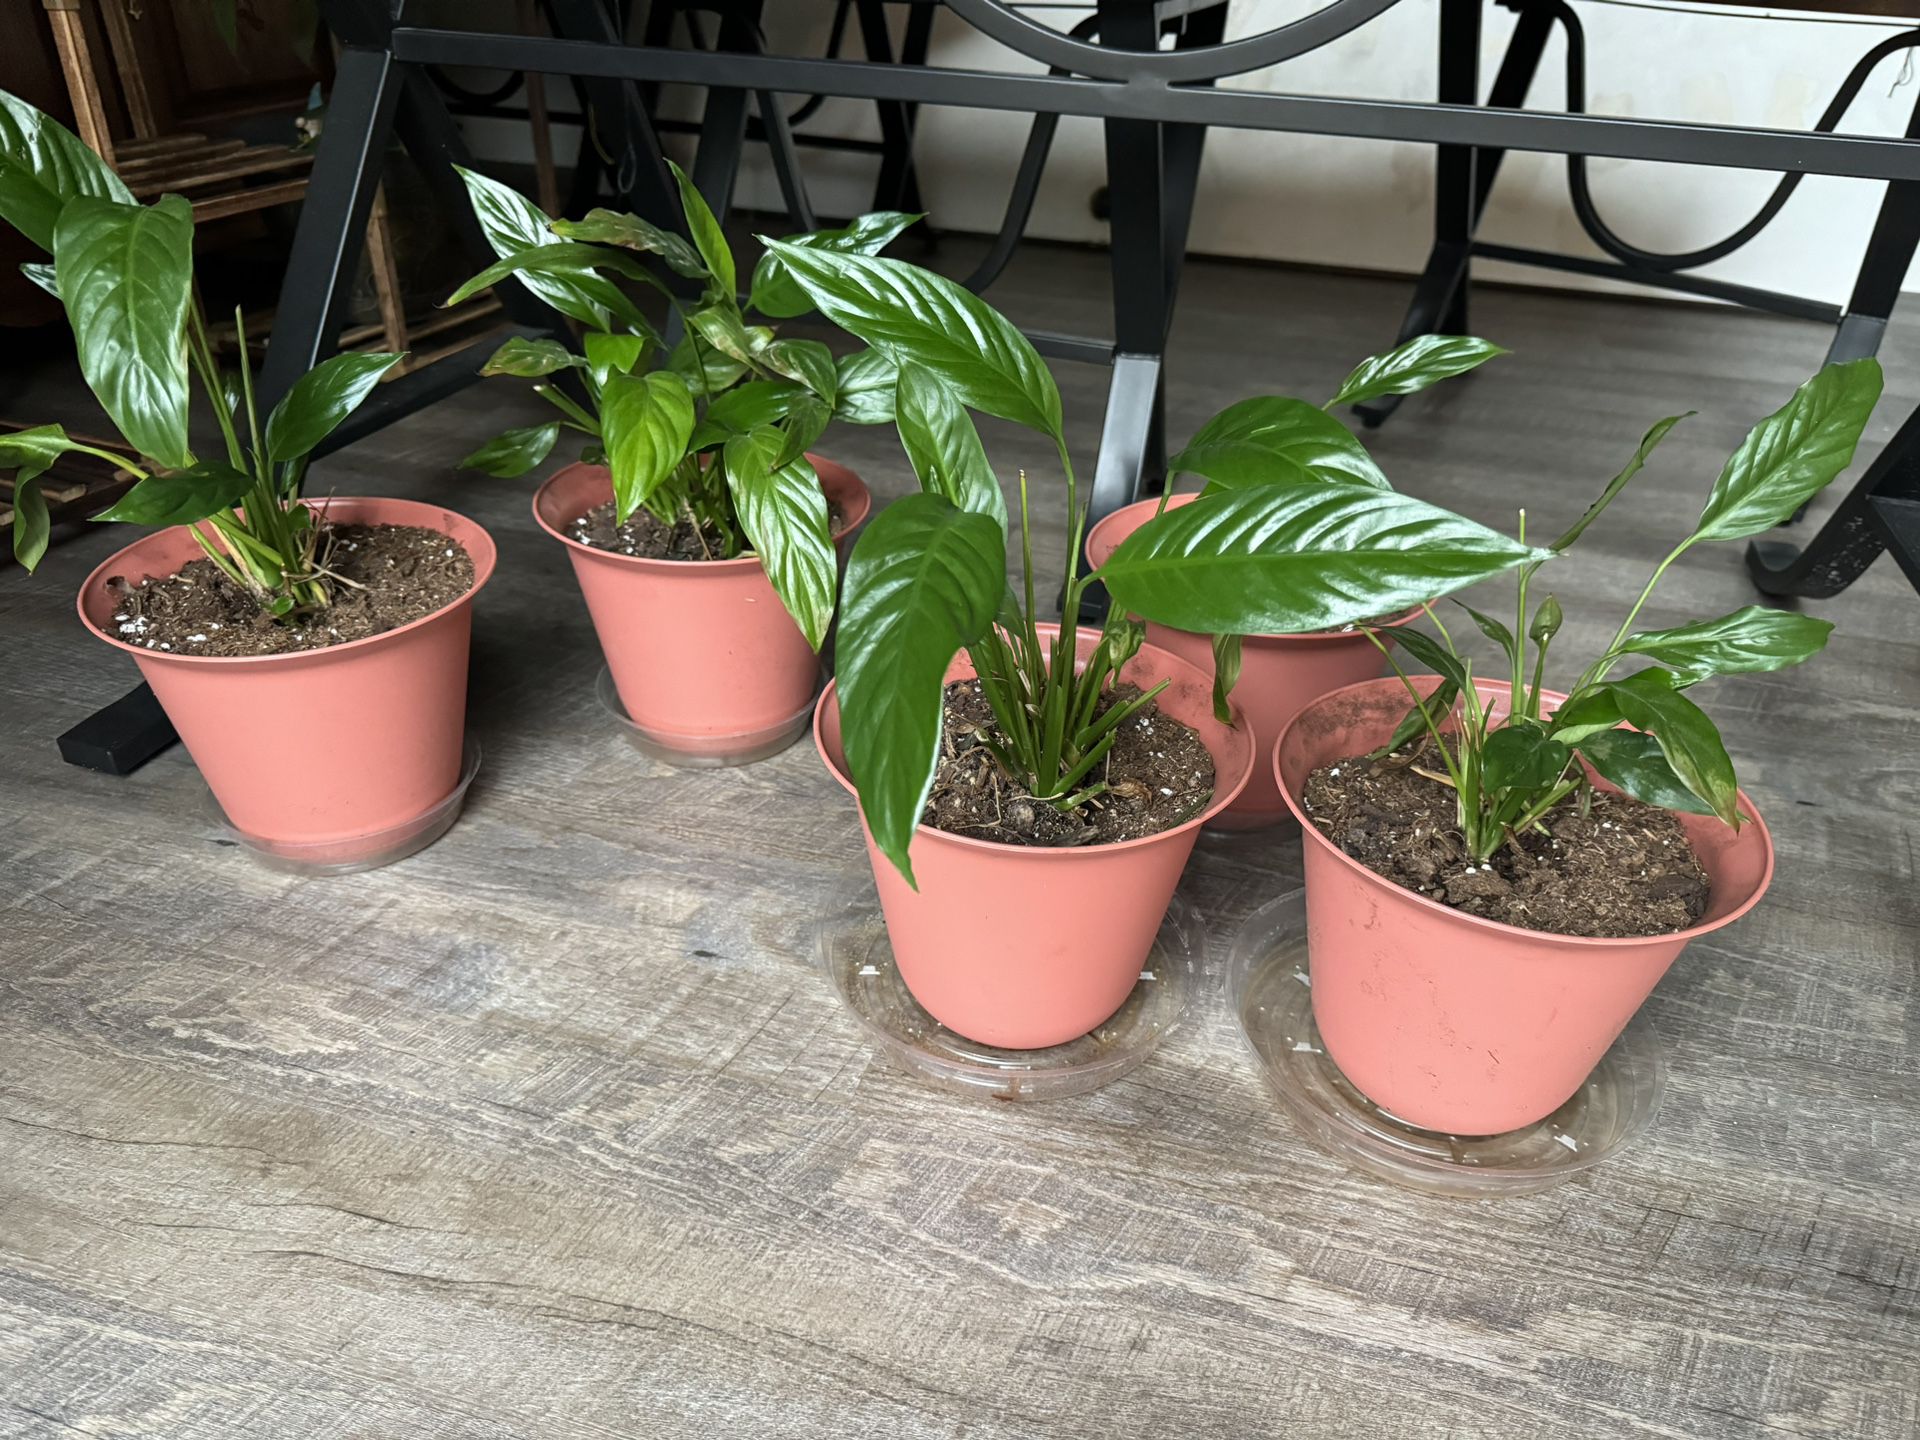 5 Peace Plants 